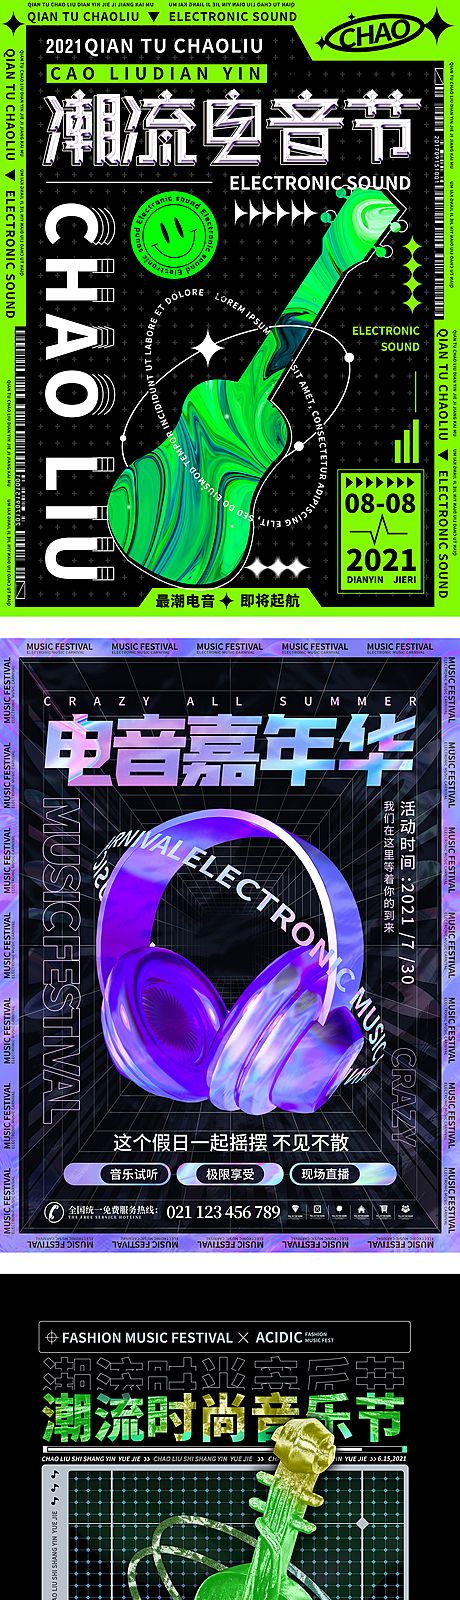 仙图网-炫酷潮流酸性电音节活动系列海报